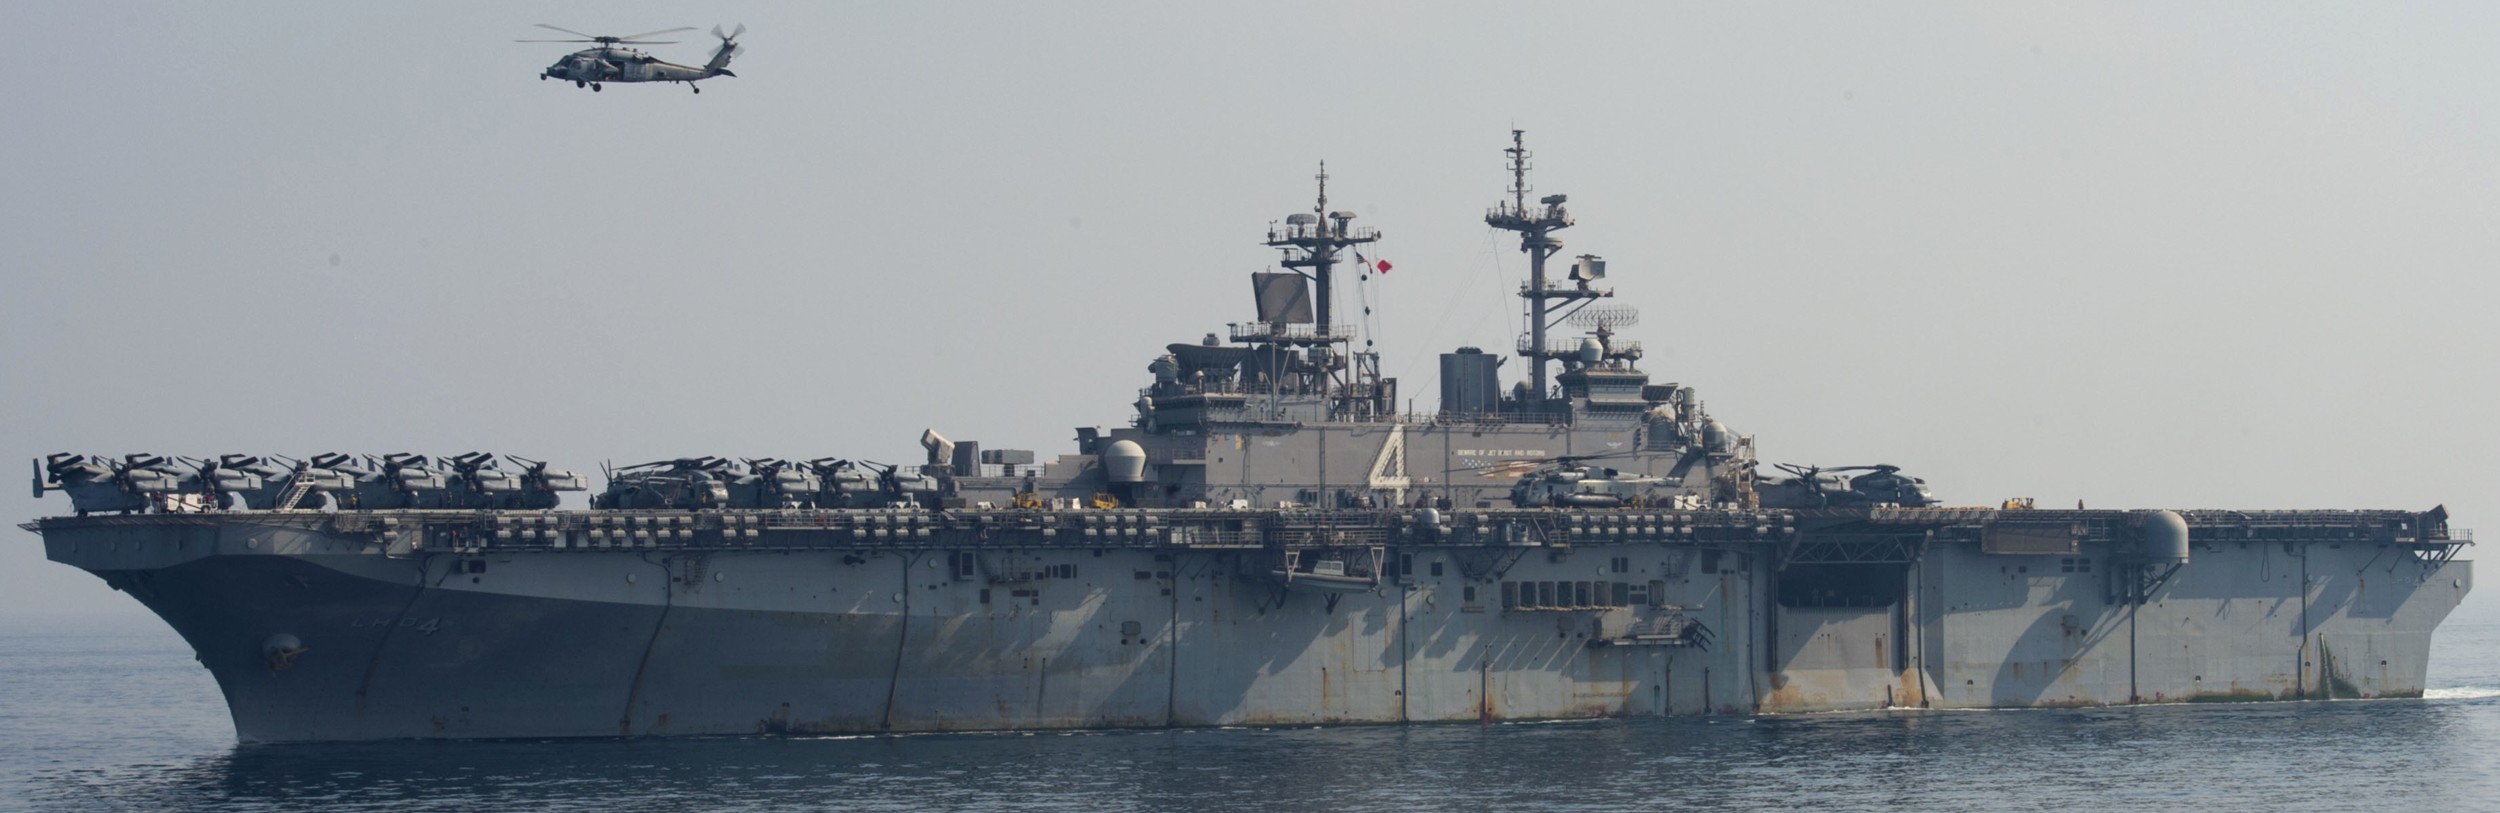 lhd-4 uss boxer wasp class amphibious assault ship landing helicopter dock us navy vmm-163 marines arabian gulf 147